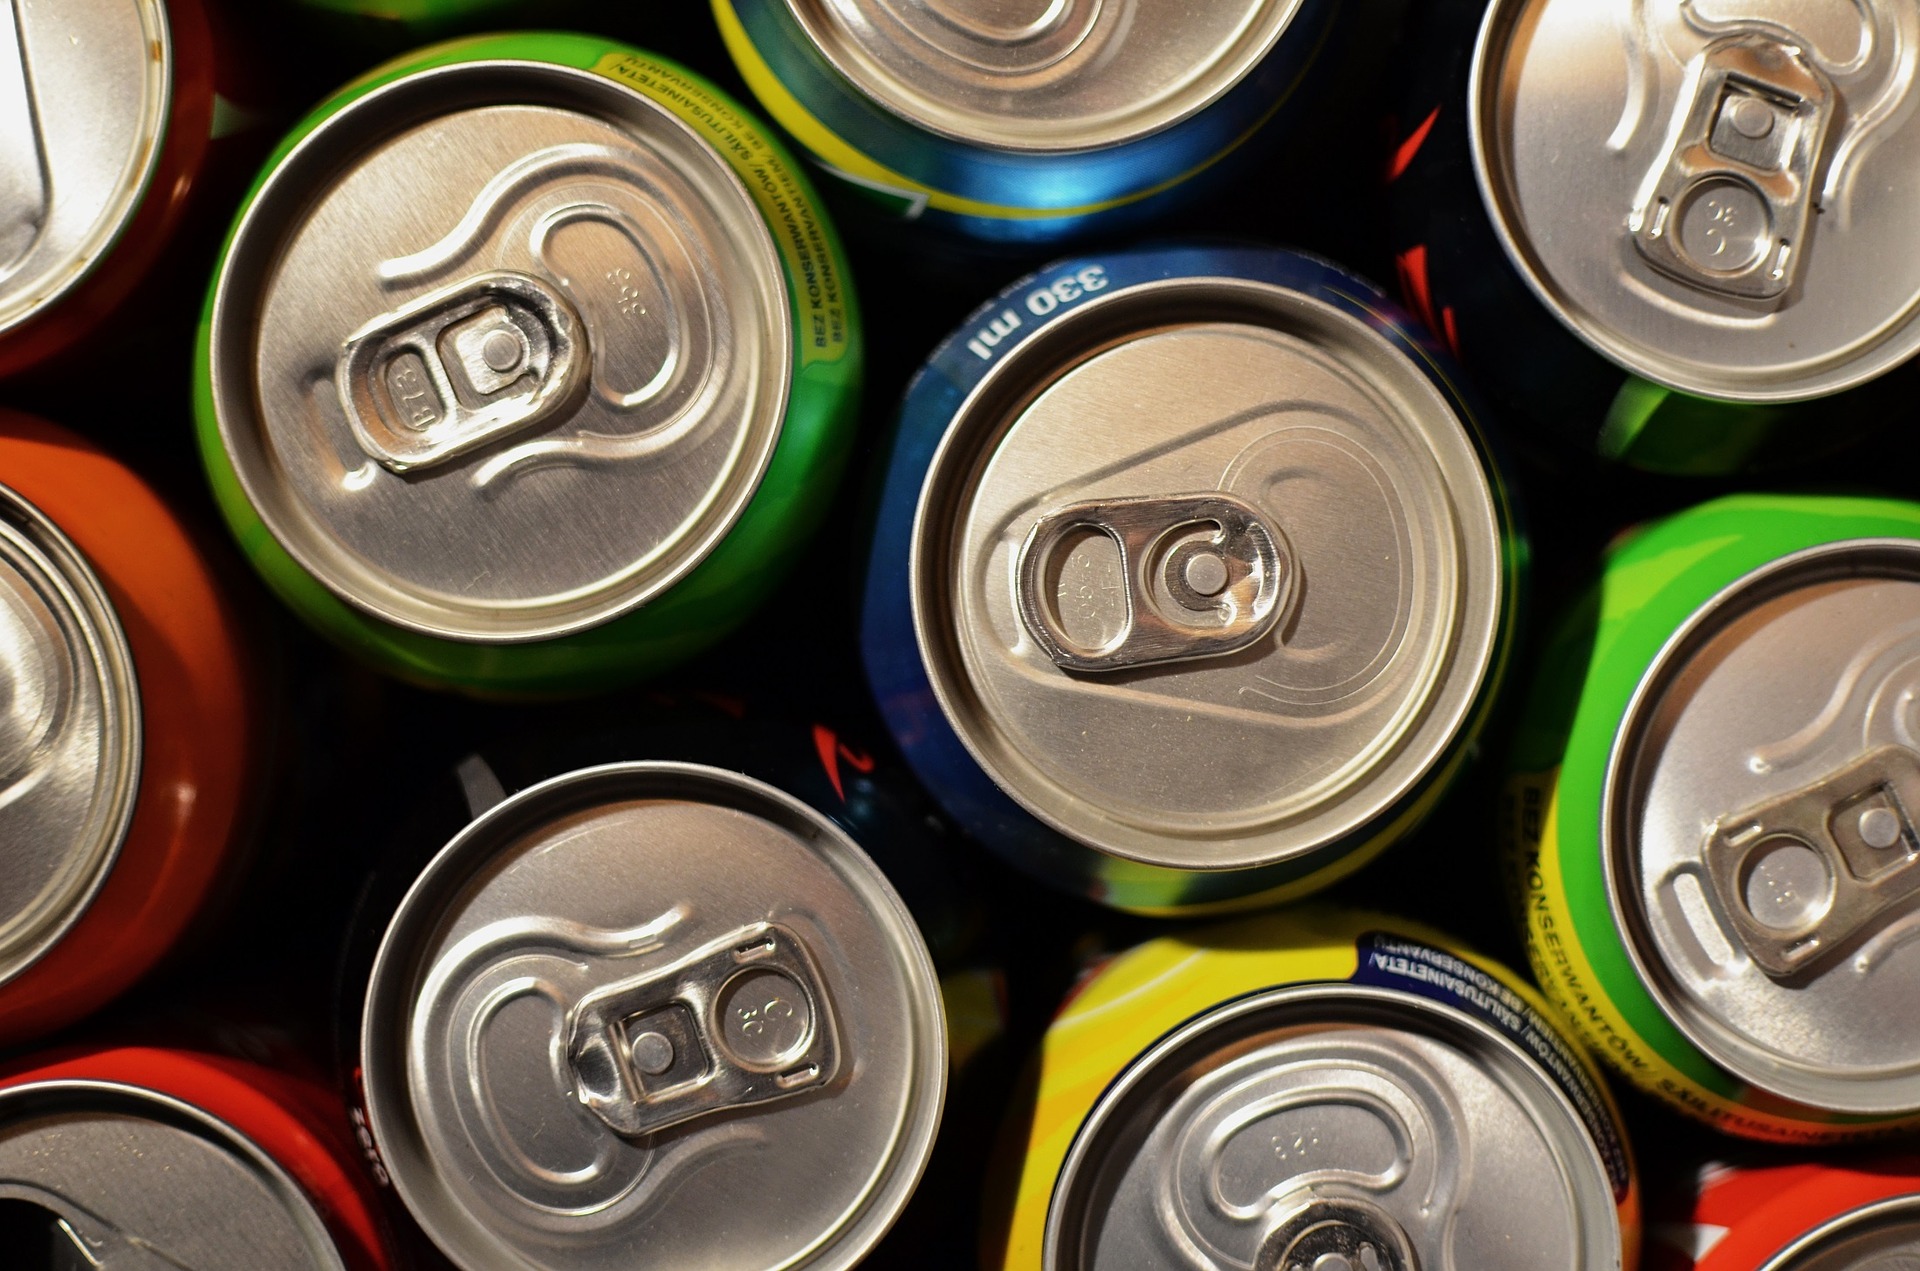 Zakaz sprzedaży napojów energetycznych dla osób poniżej 18 roku życia? Projekt ustawy trafił do Sejmu